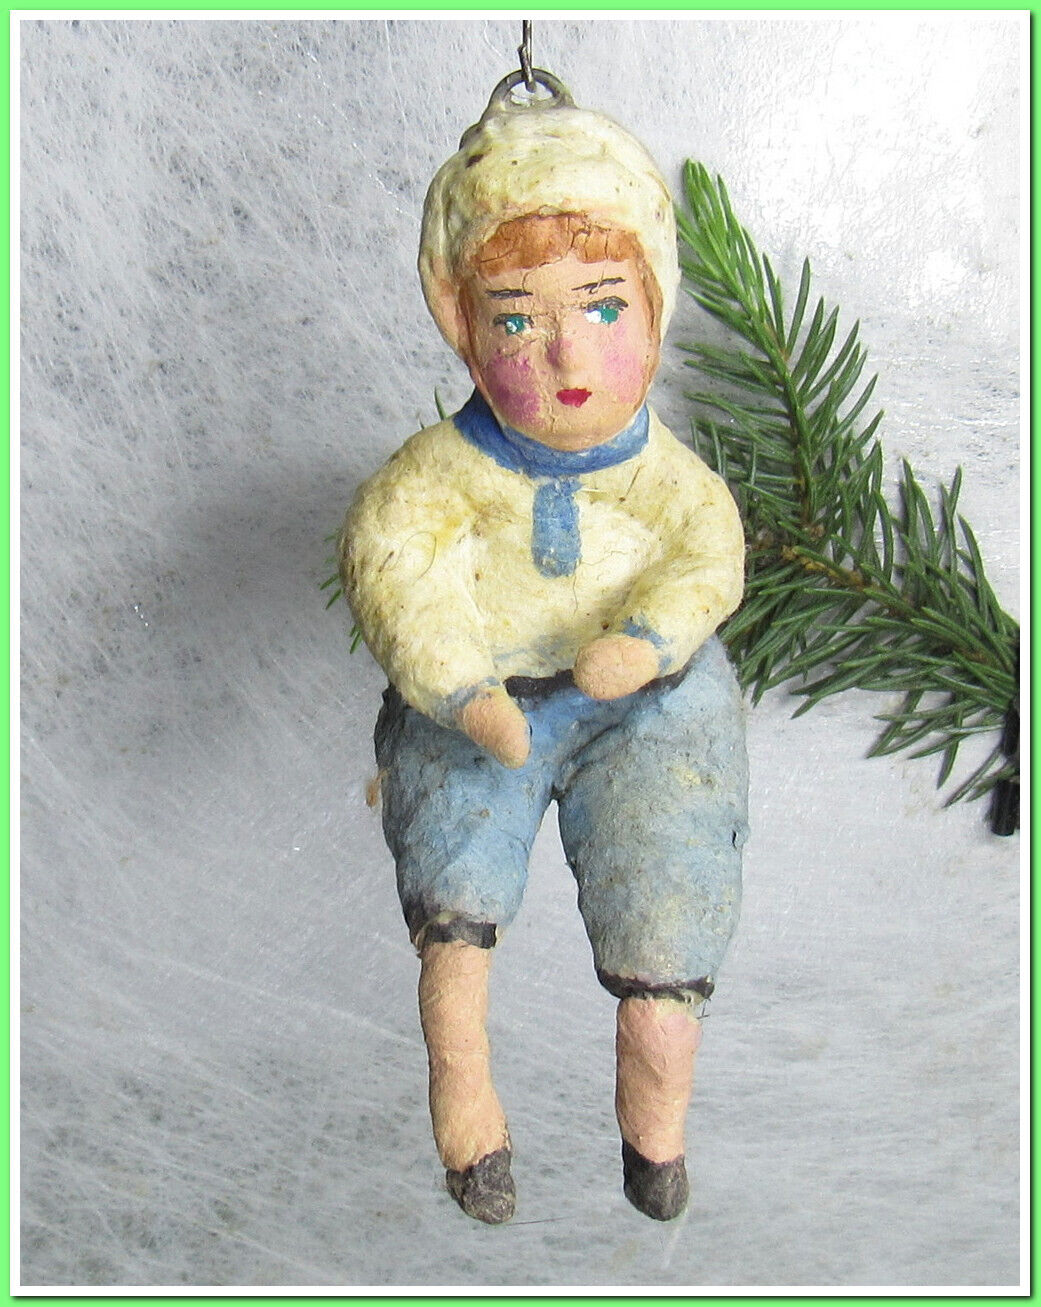 🎄Boy~Vintage antique Christmas spun cotton ornament figure #4524